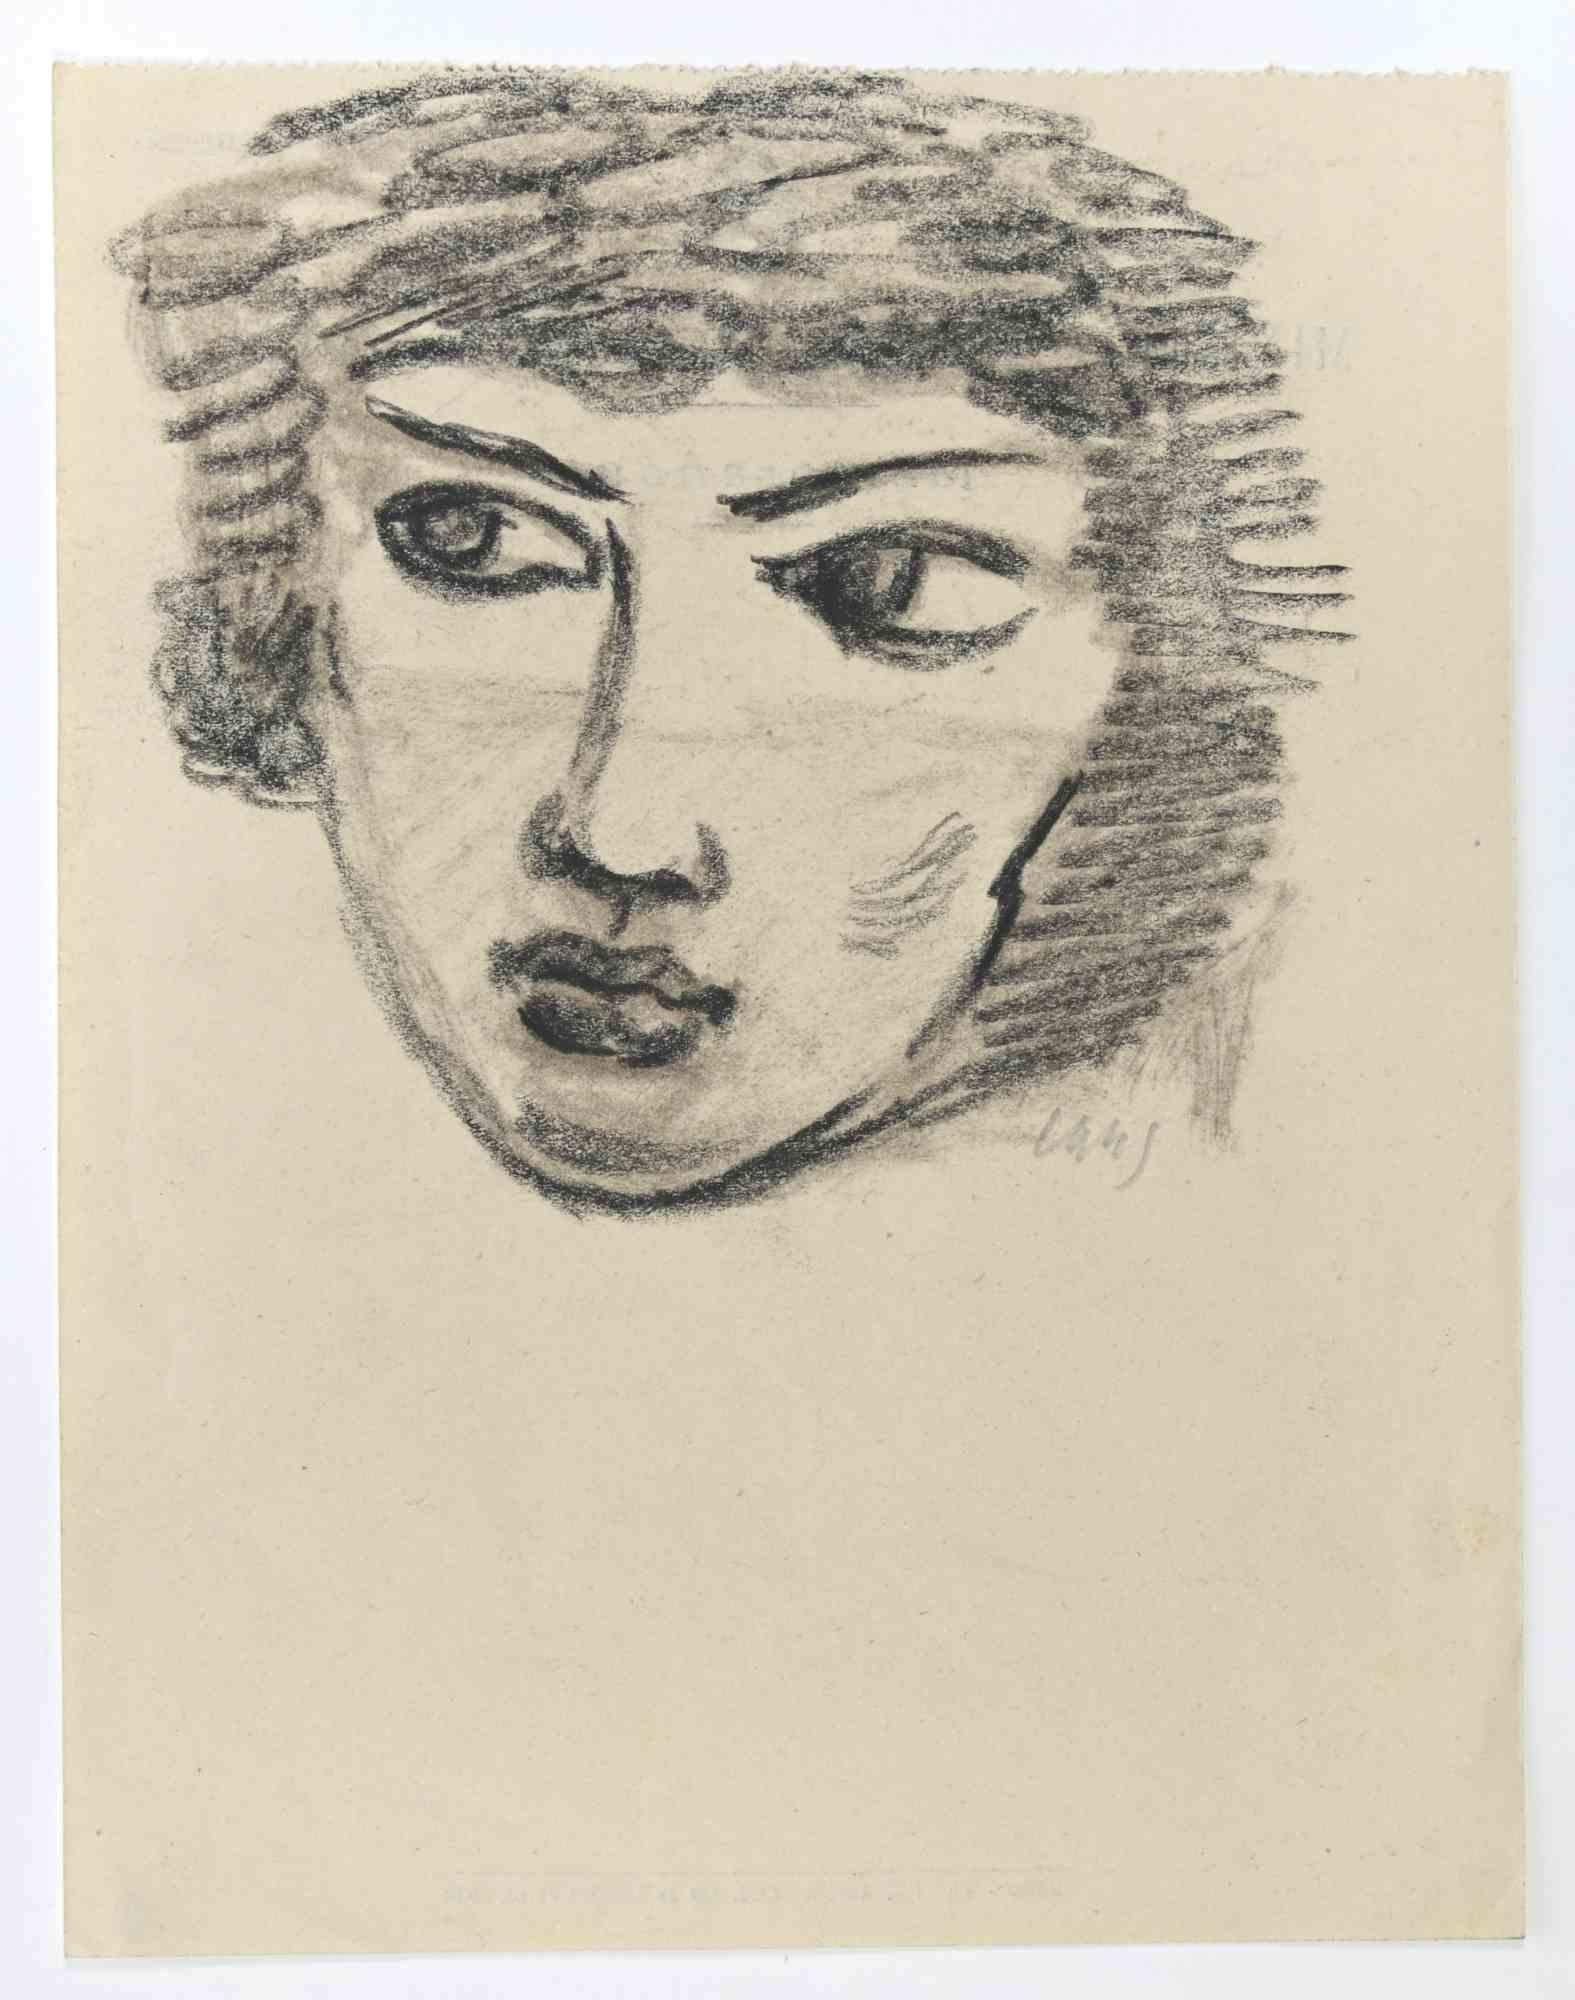 Le portrait est un dessin au crayon réalisé par Mino Maccari  (1924-1989) en 1945.

Monogramme dans la marge inférieure.

Bon état.

Mino Maccari (Sienne, 1924-Rome, 16 juin 1989) est un écrivain, peintre, graveur et journaliste italien, lauréat du